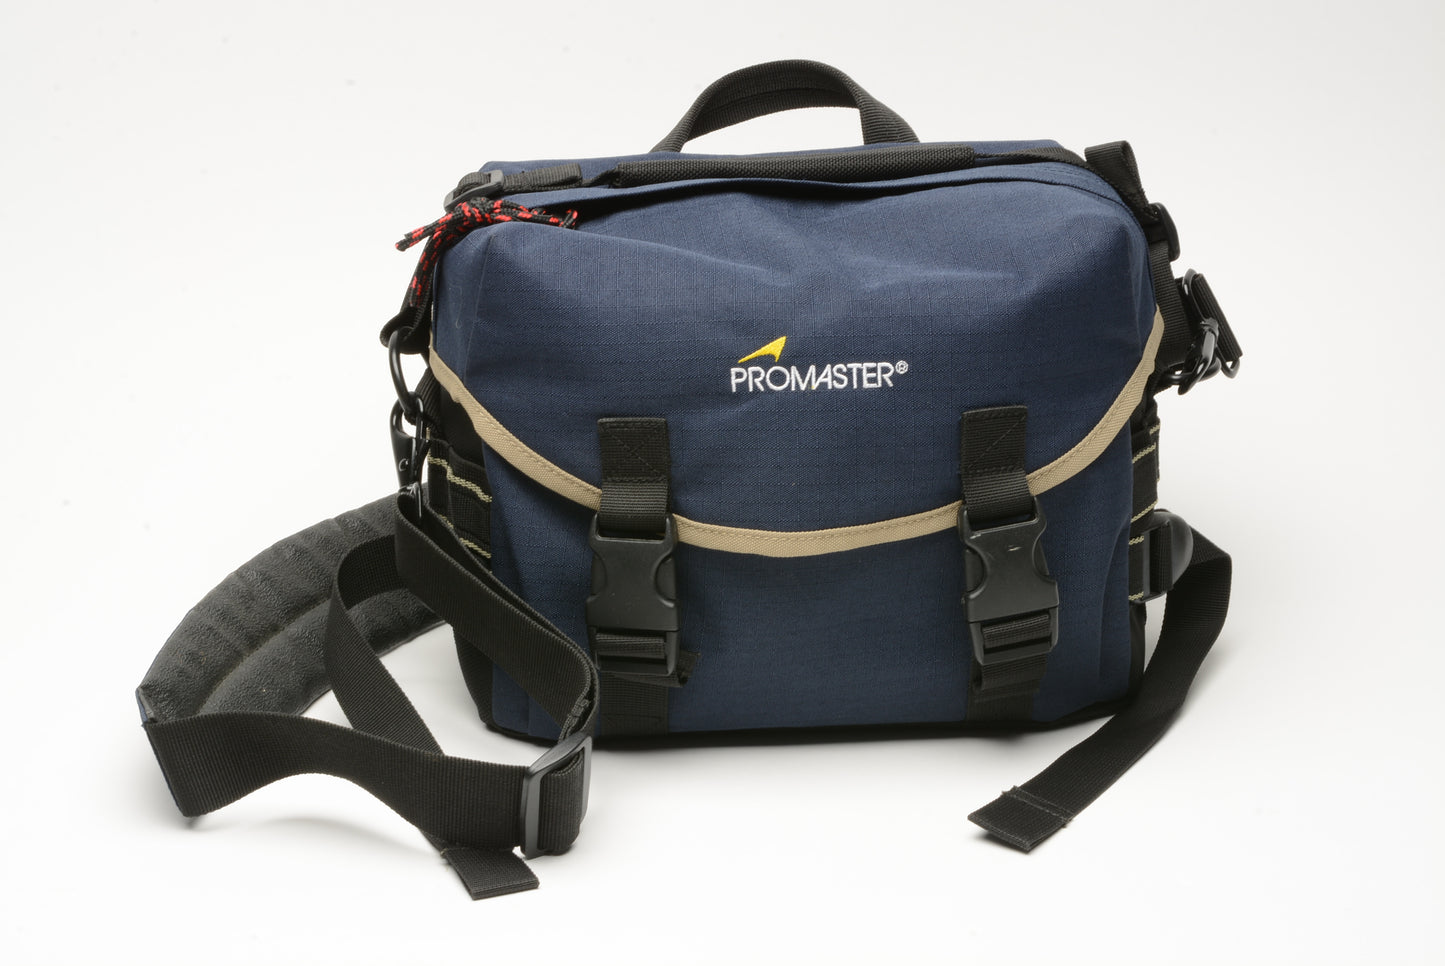 Promaster camera shoulder bag, measures ~ 14" x 9 x 7" deep, shoulder + hip strap